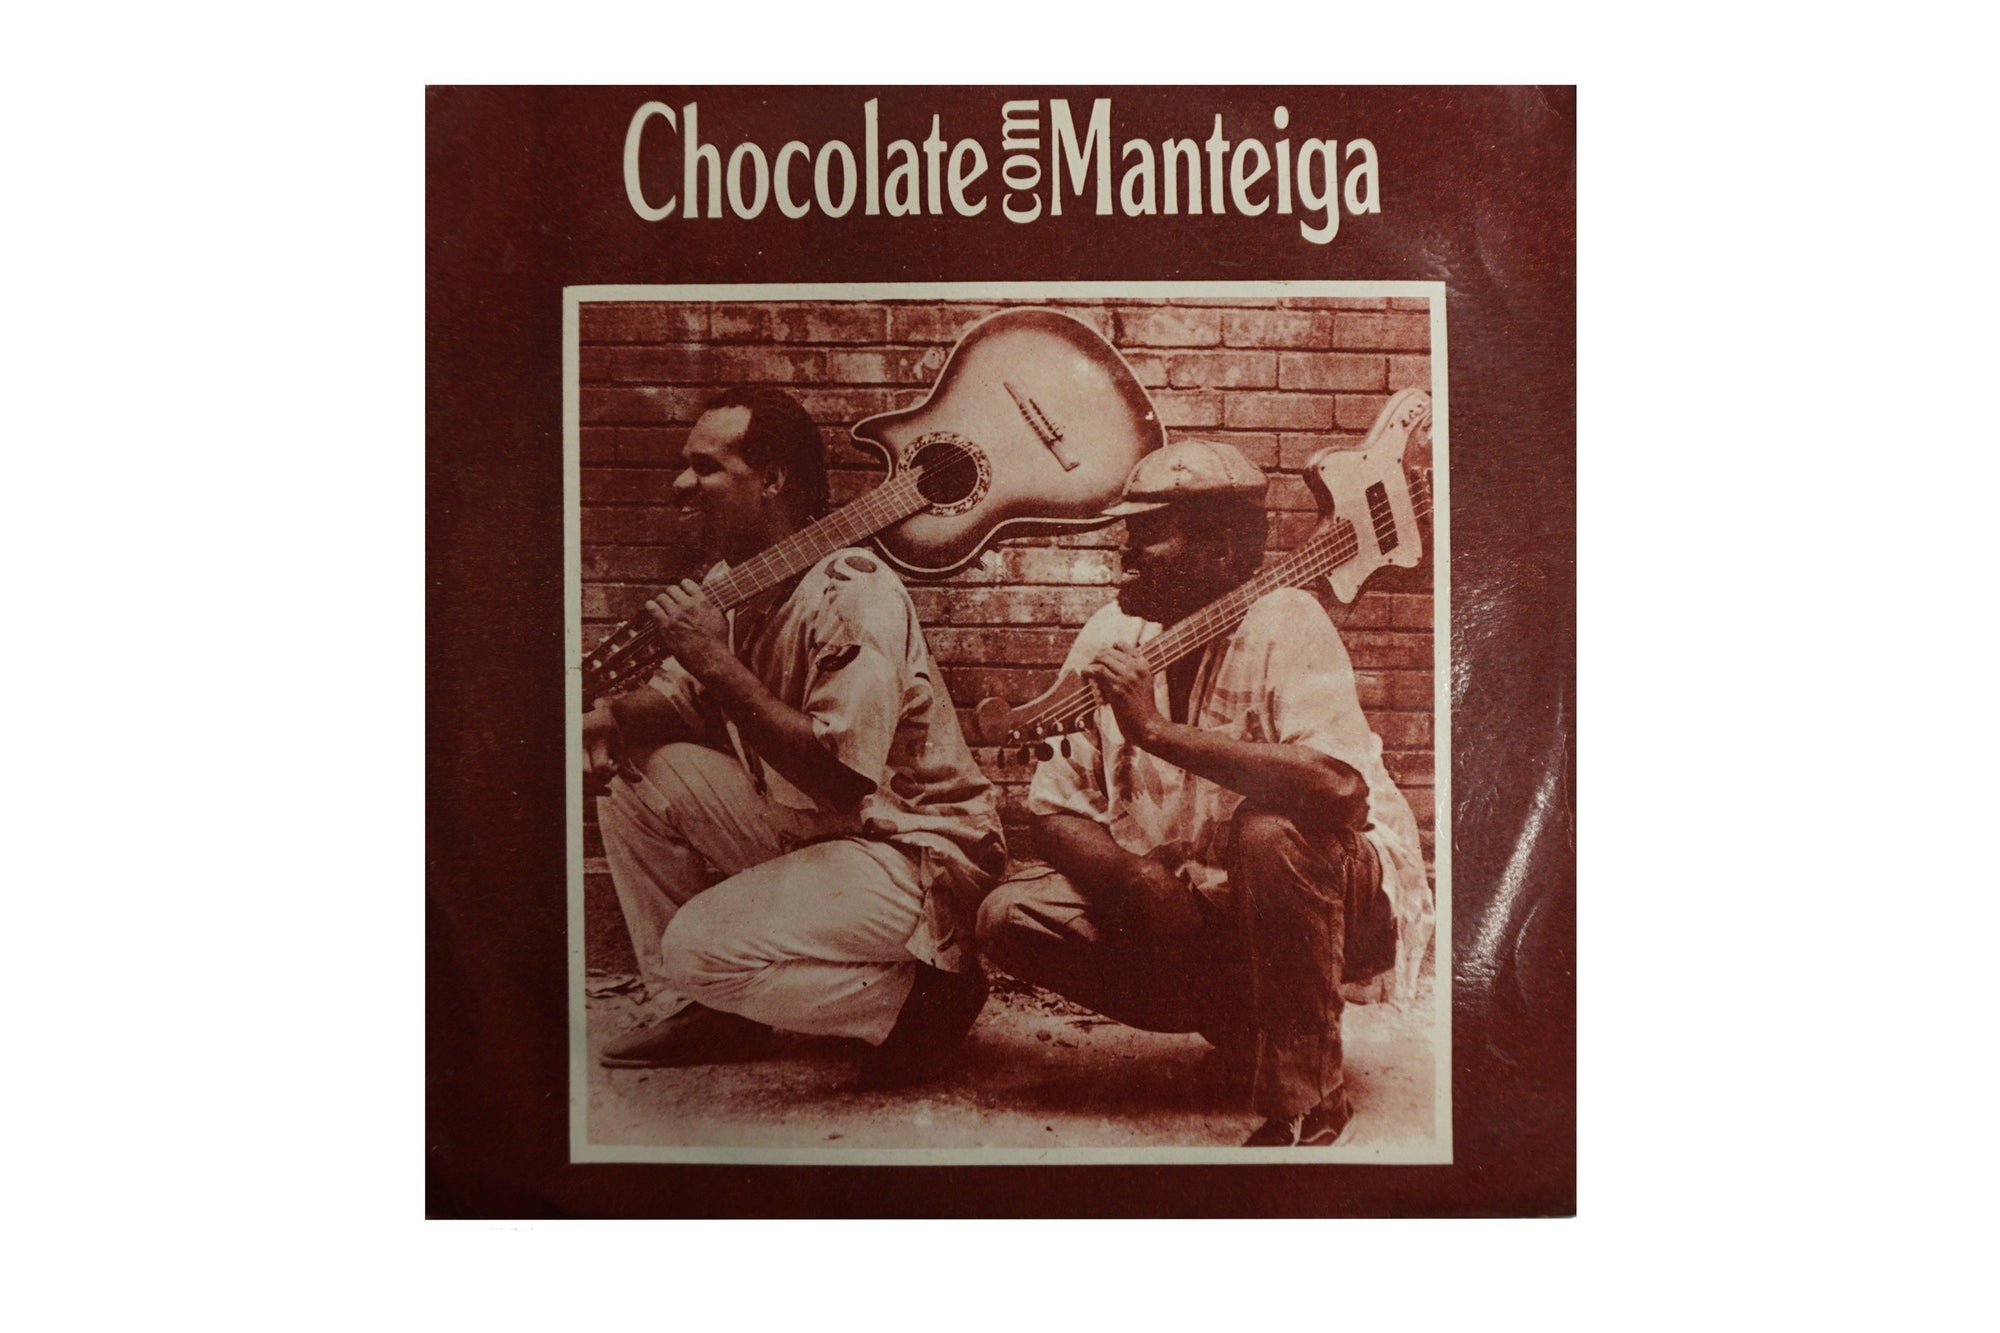 Beto-Chocolate-Chocolate-Com-Manteiga-7-record